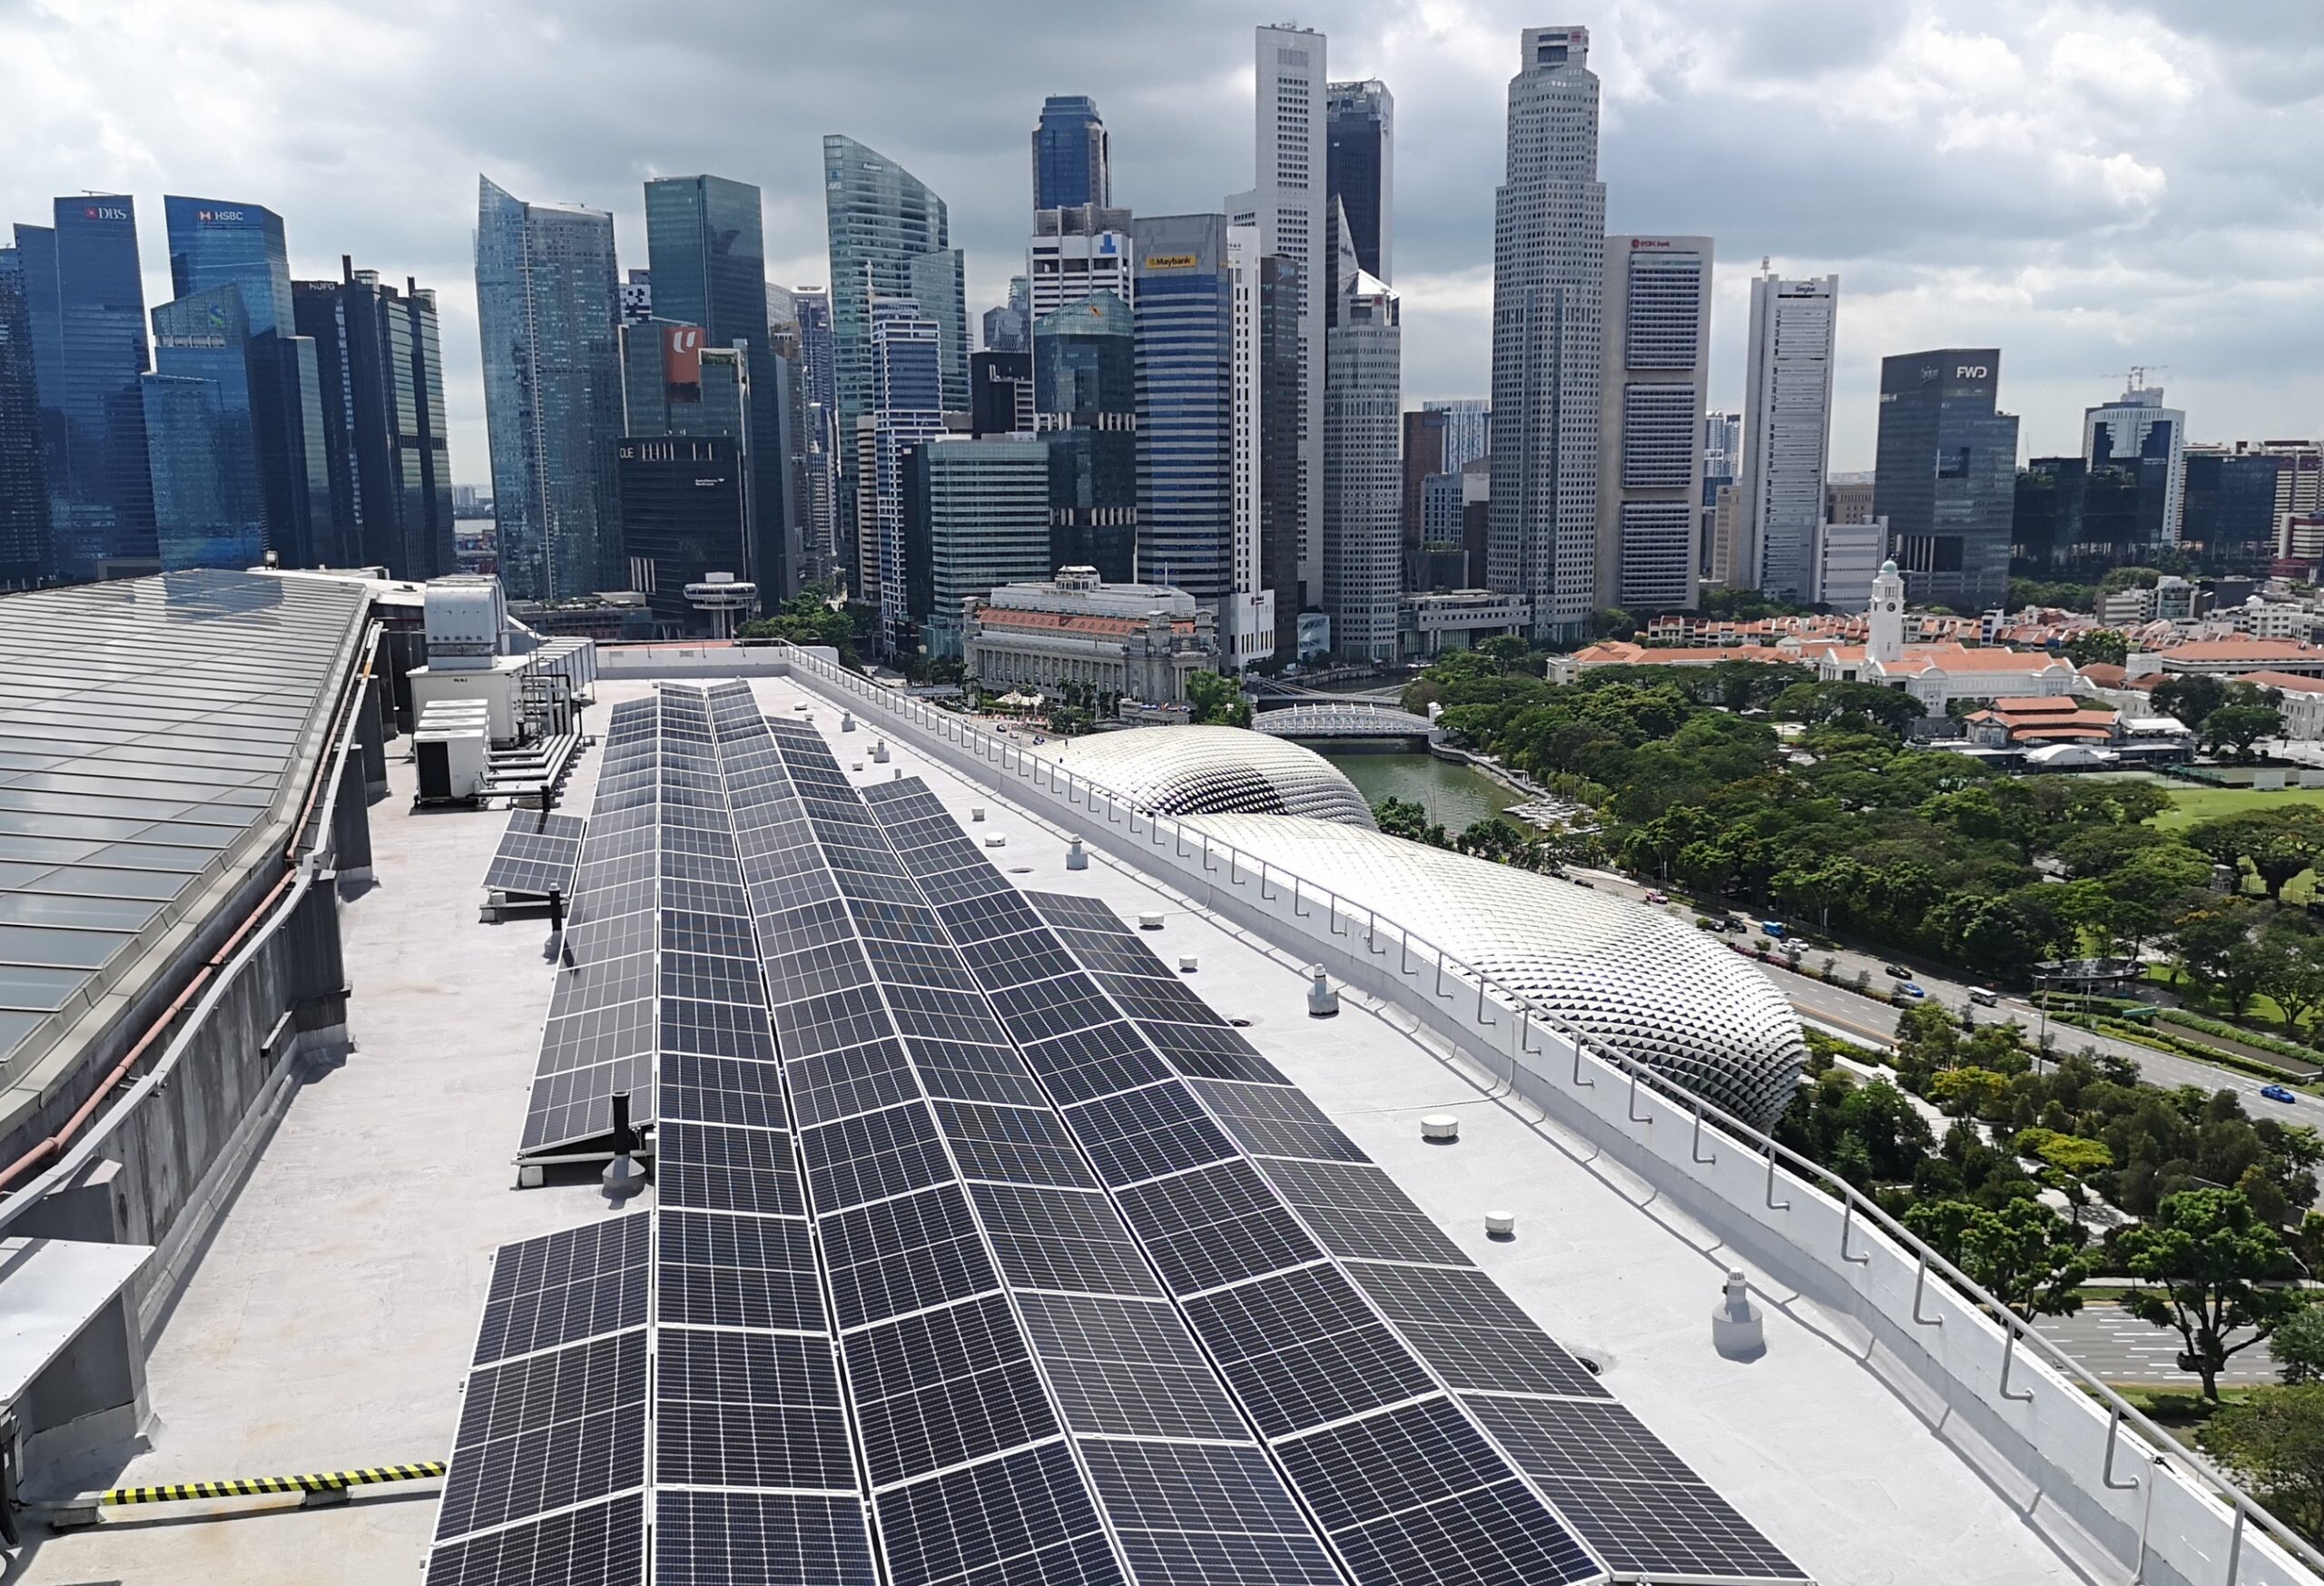 PARKROYAL COLLECTION Marina Bay, Singapore ตอกย้ำจุดยืน "Garden-in-a-Hotel" แห่งแรกของสิงคโปร์ โอบรับความยั่งยืนในระยะยาวด้วยนวัตกรรมสีเขียว